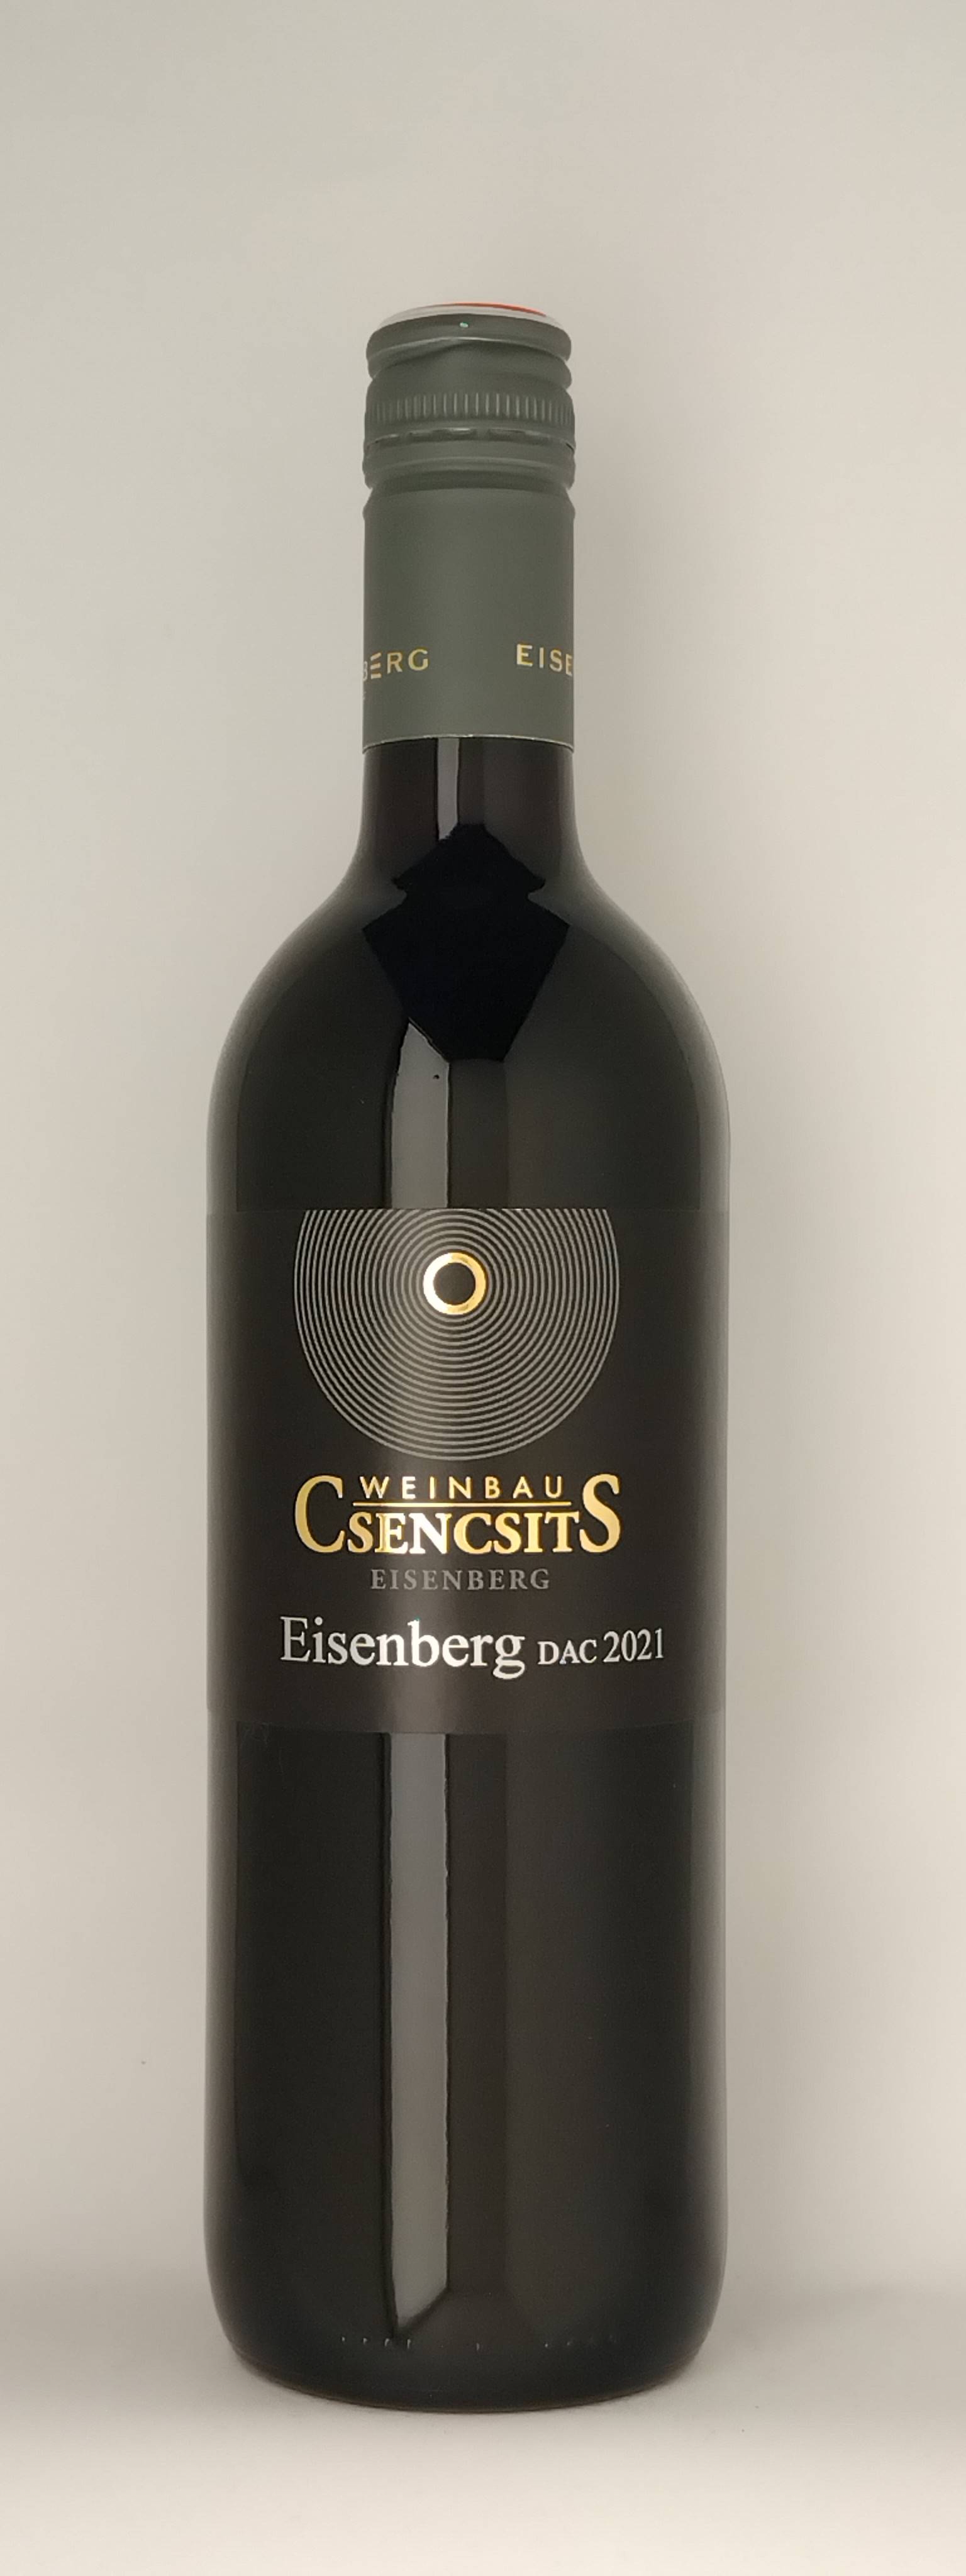 Vinothek Eisenberg Eisenberg DAC 2021 Csencsits Erwin